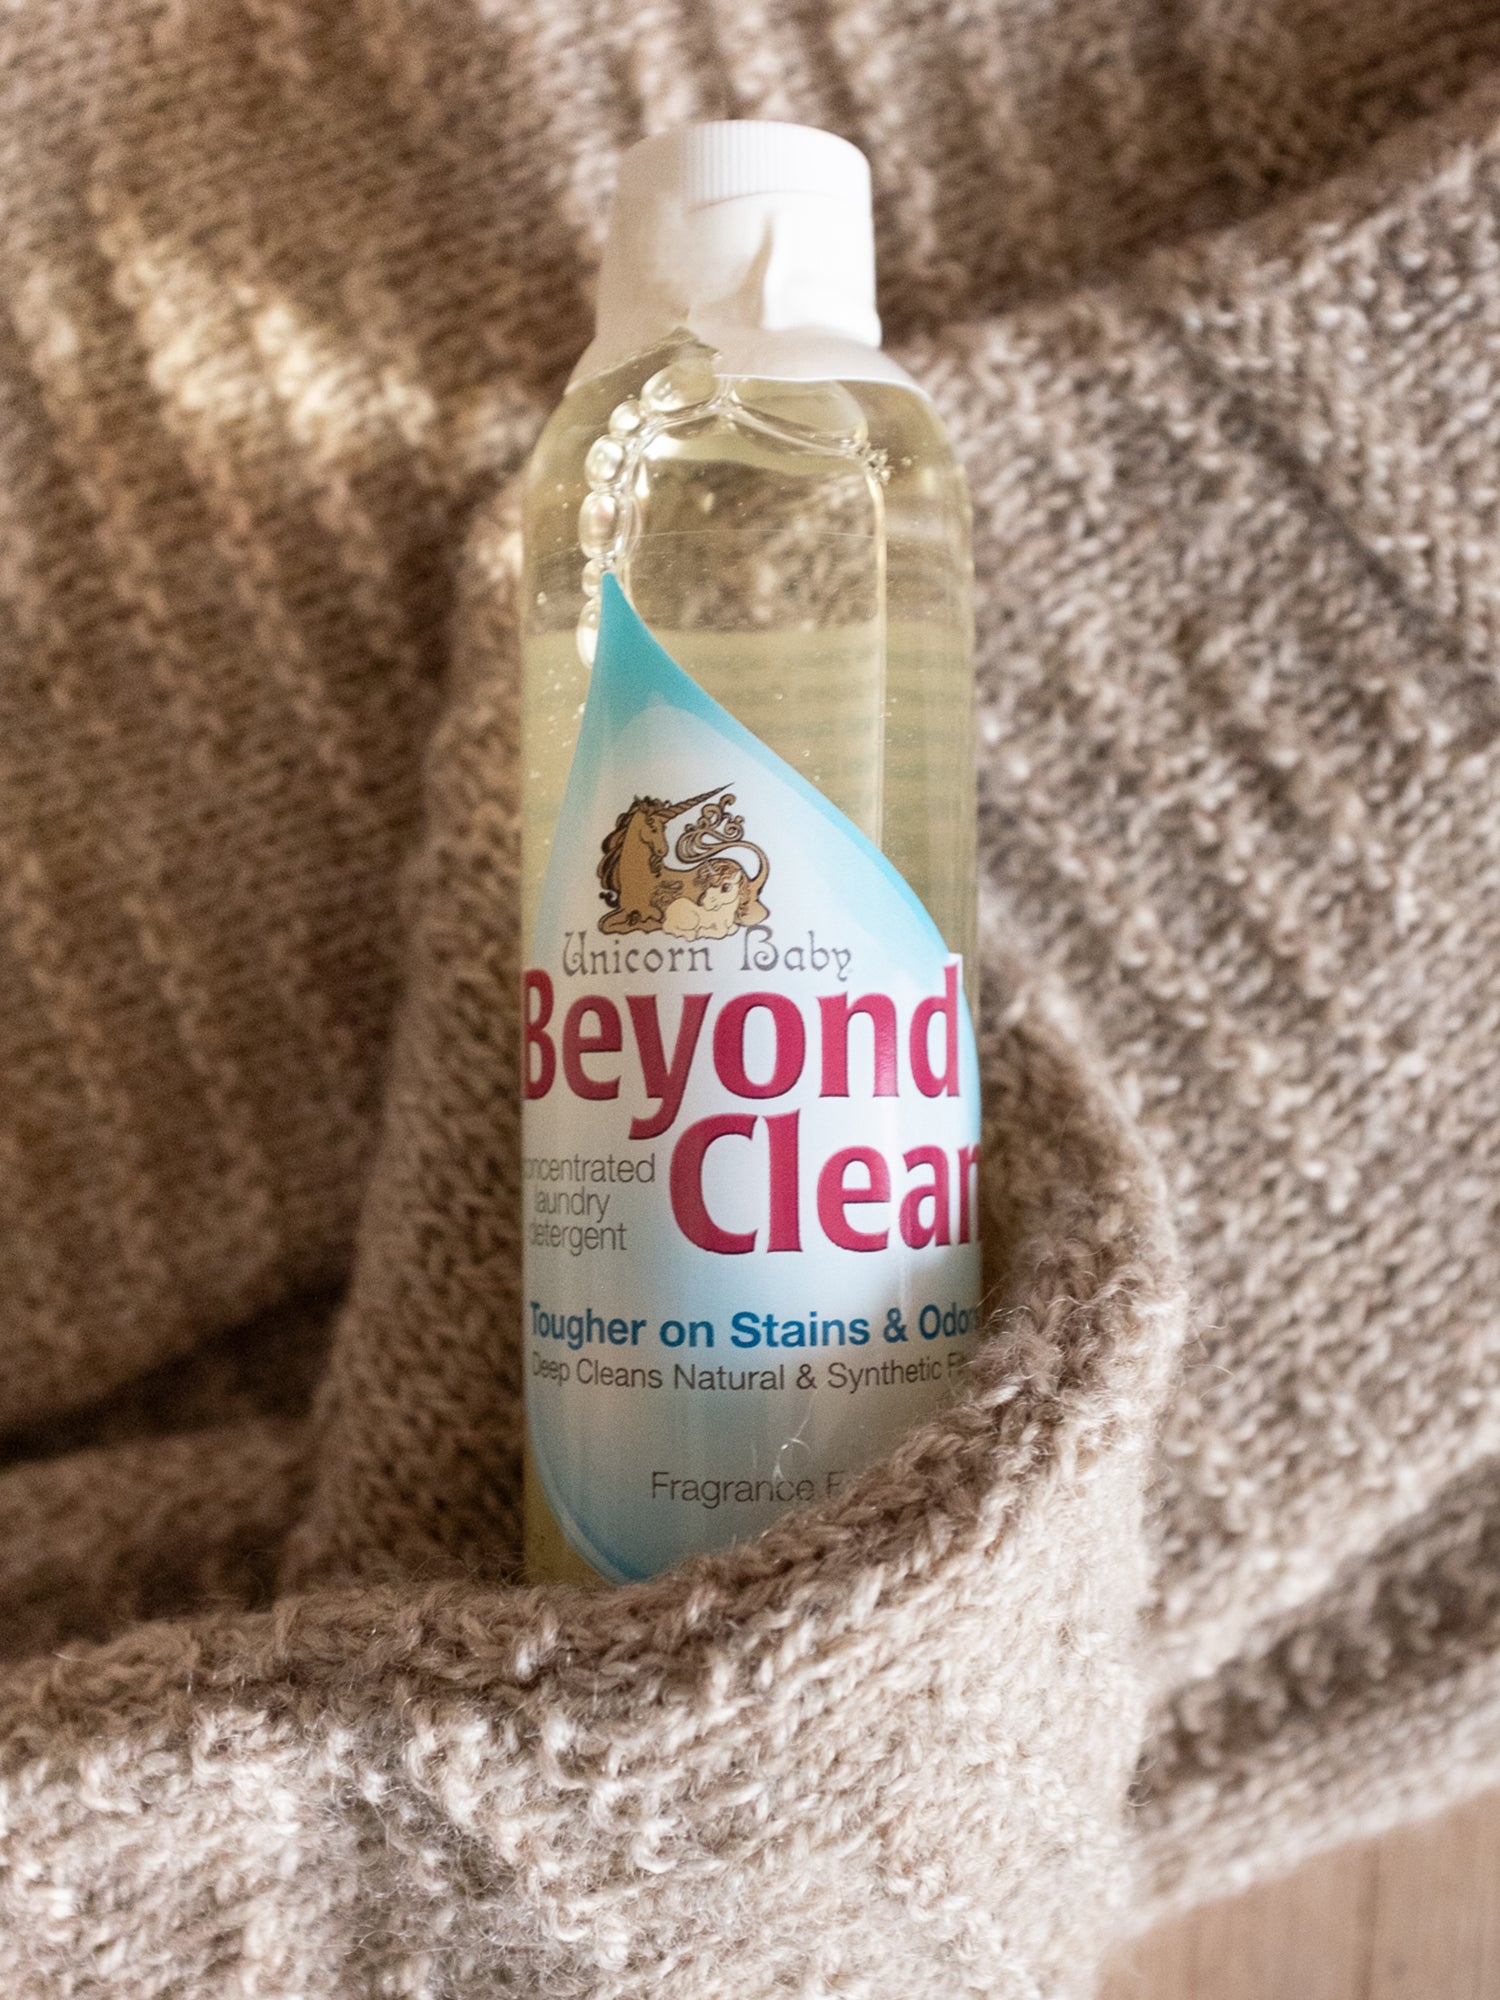 Beyond Clean